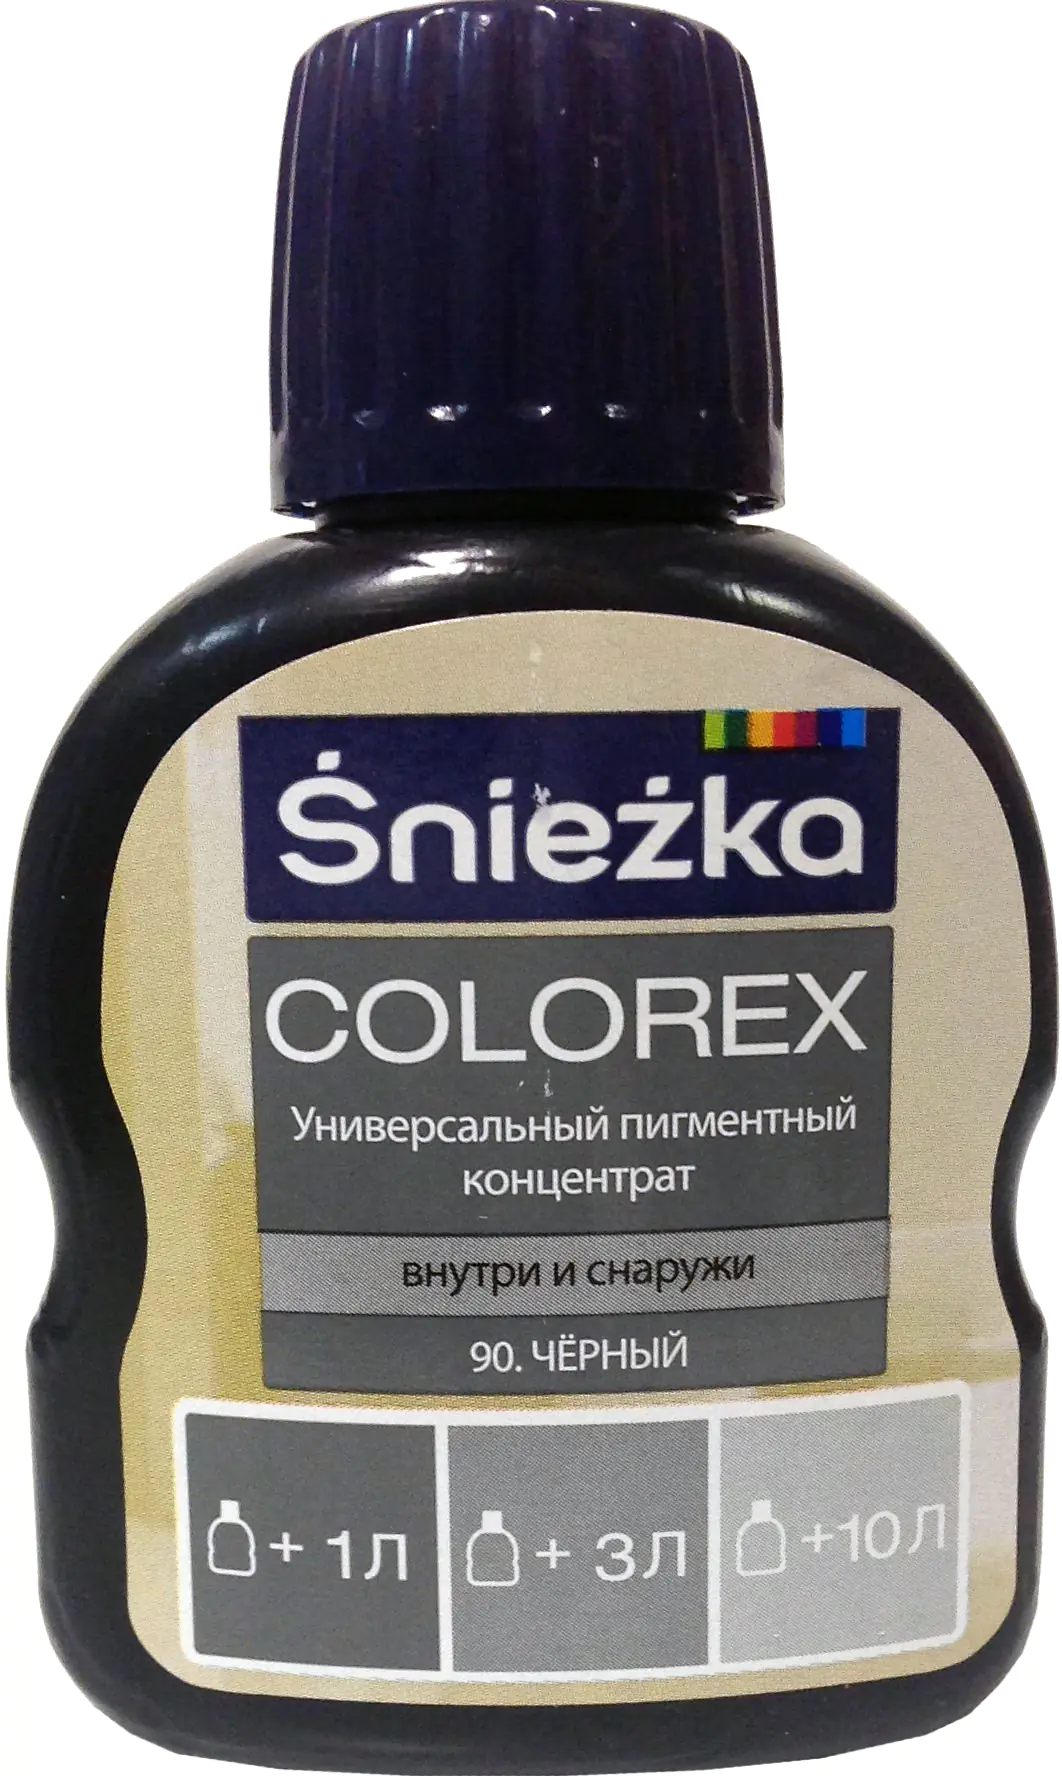 Колер Sniezka Colorex №90. Черный. 100 мл. Польша.